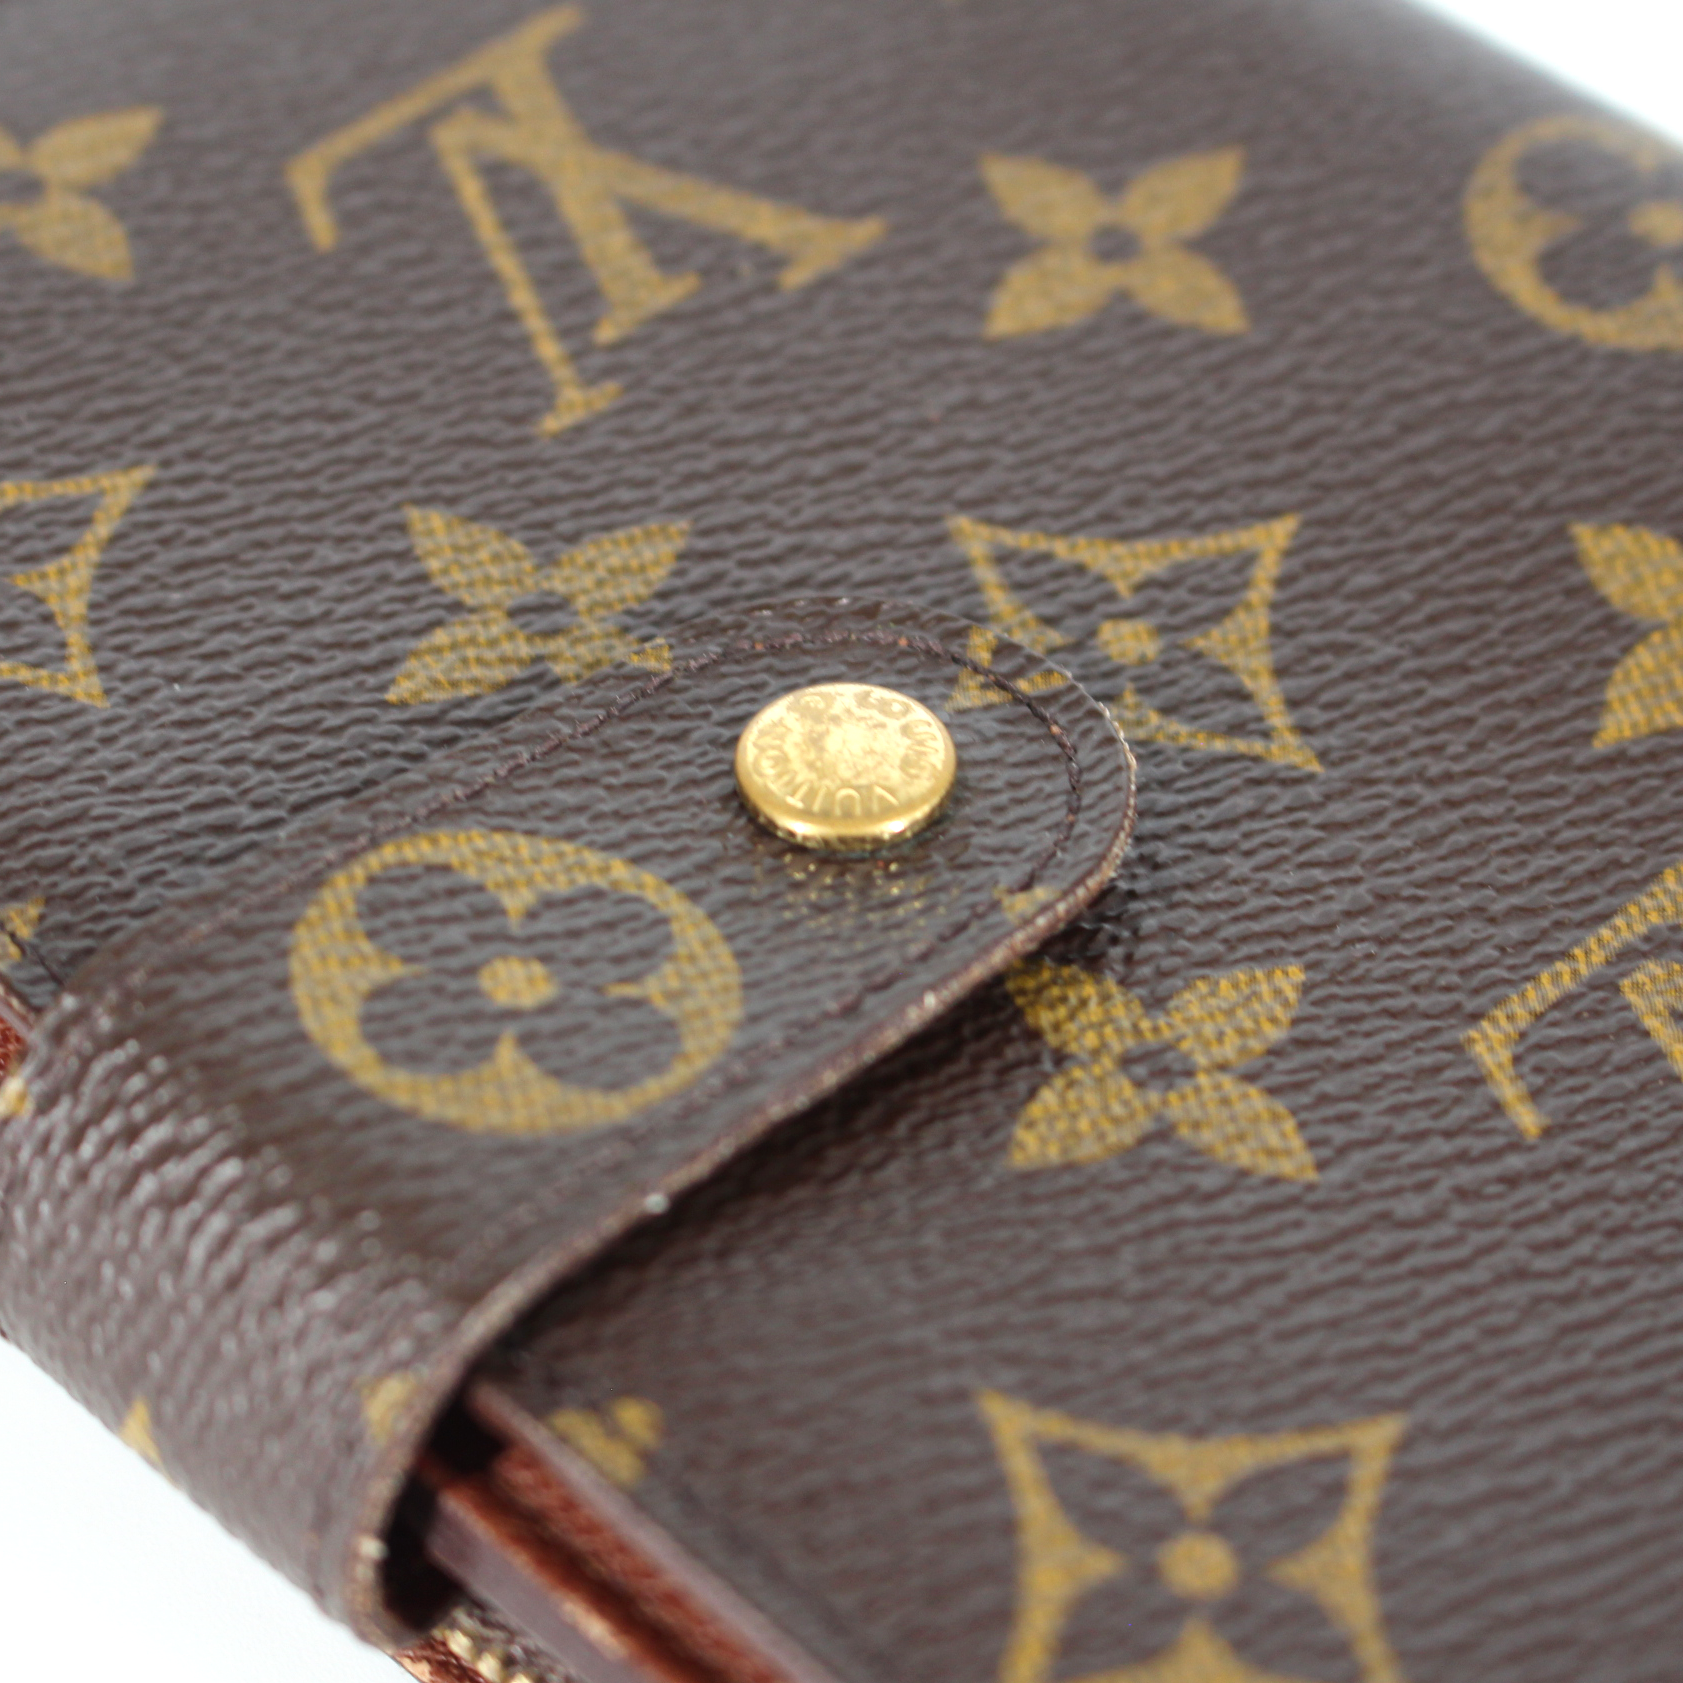 Louis Vuitton Compact Monogram Porte Papier Bifold Wallet – The